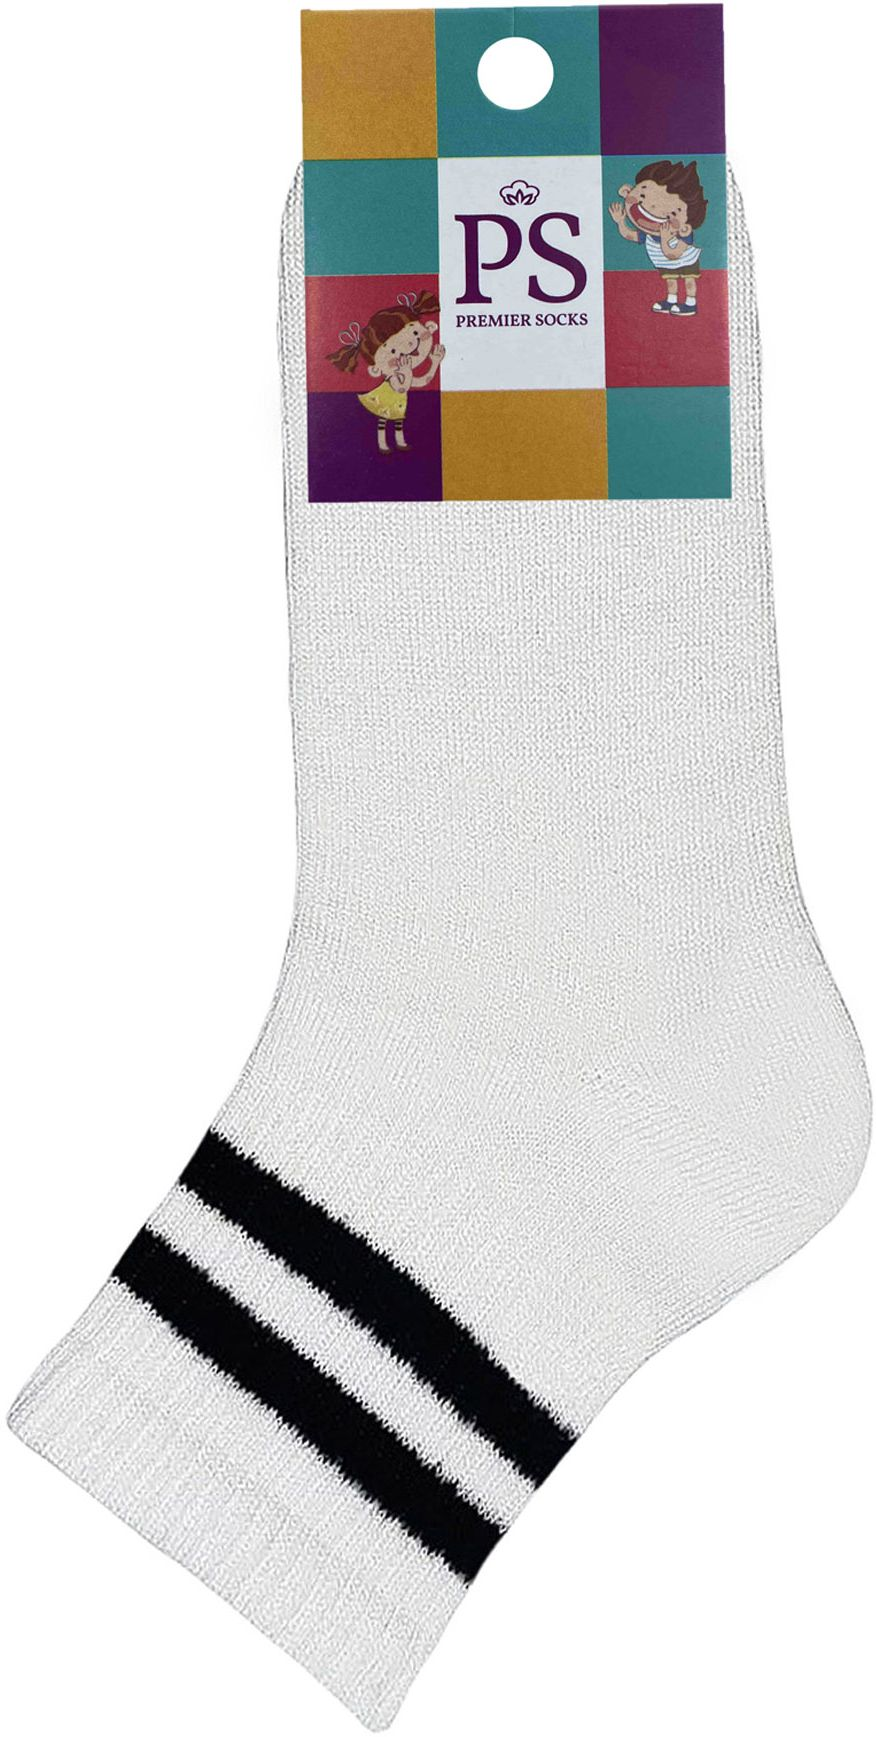 Шкарпетки дитячі Premier Socks 22-24 1 пара білі з чорними смужками (4820163320083)фото2